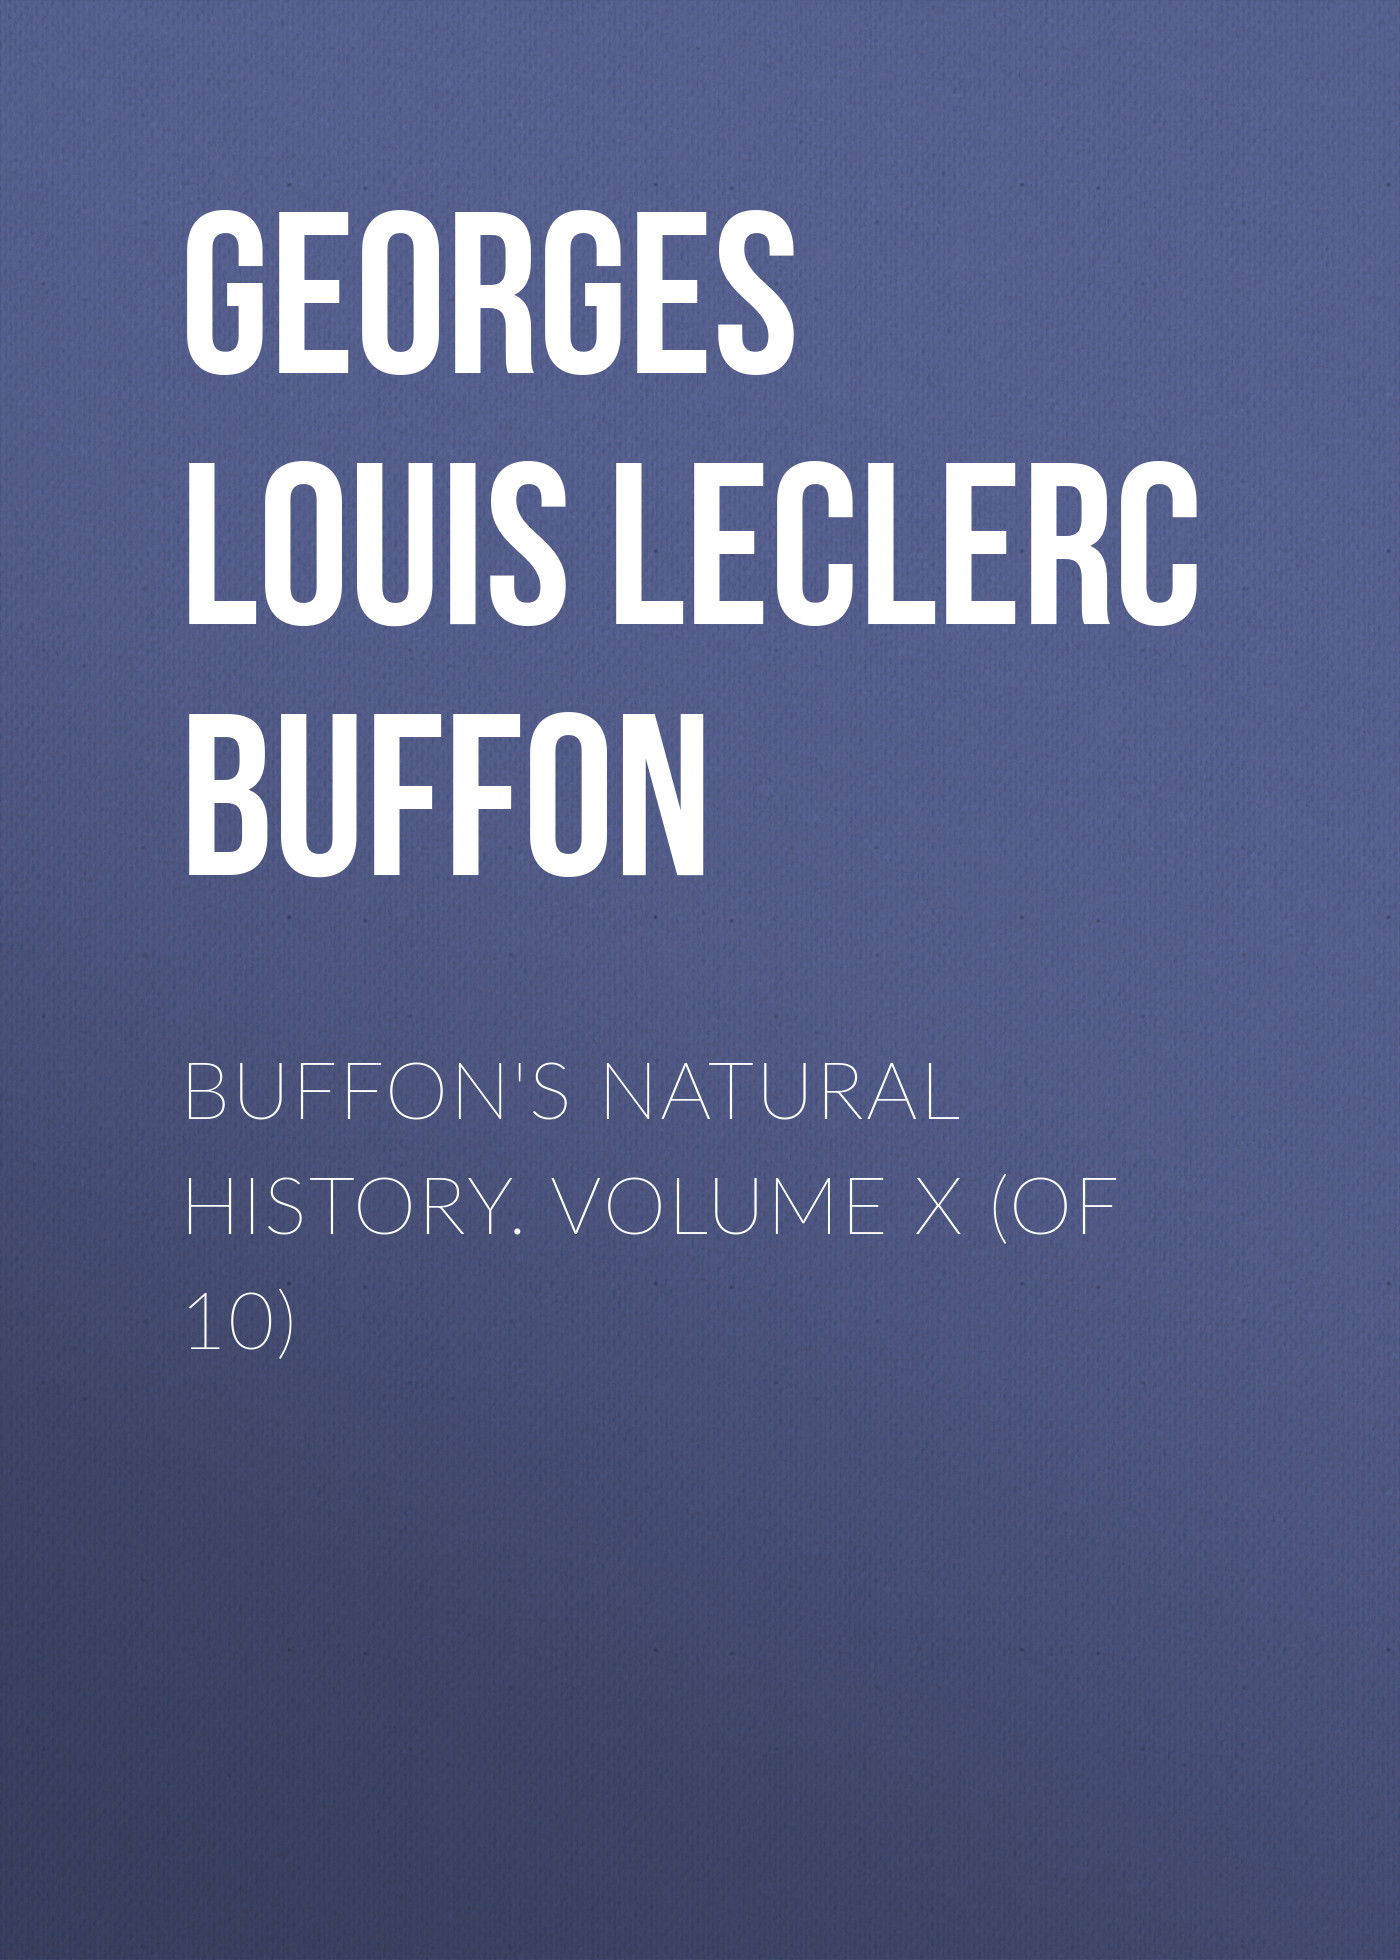 Книга Buffon's Natural History. Volume X (of 10) из серии , созданная Georges Buffon, может относится к жанру Зарубежная старинная литература, Зарубежная классика. Стоимость электронной книги Buffon's Natural History. Volume X (of 10) с идентификатором 24170260 составляет 0 руб.